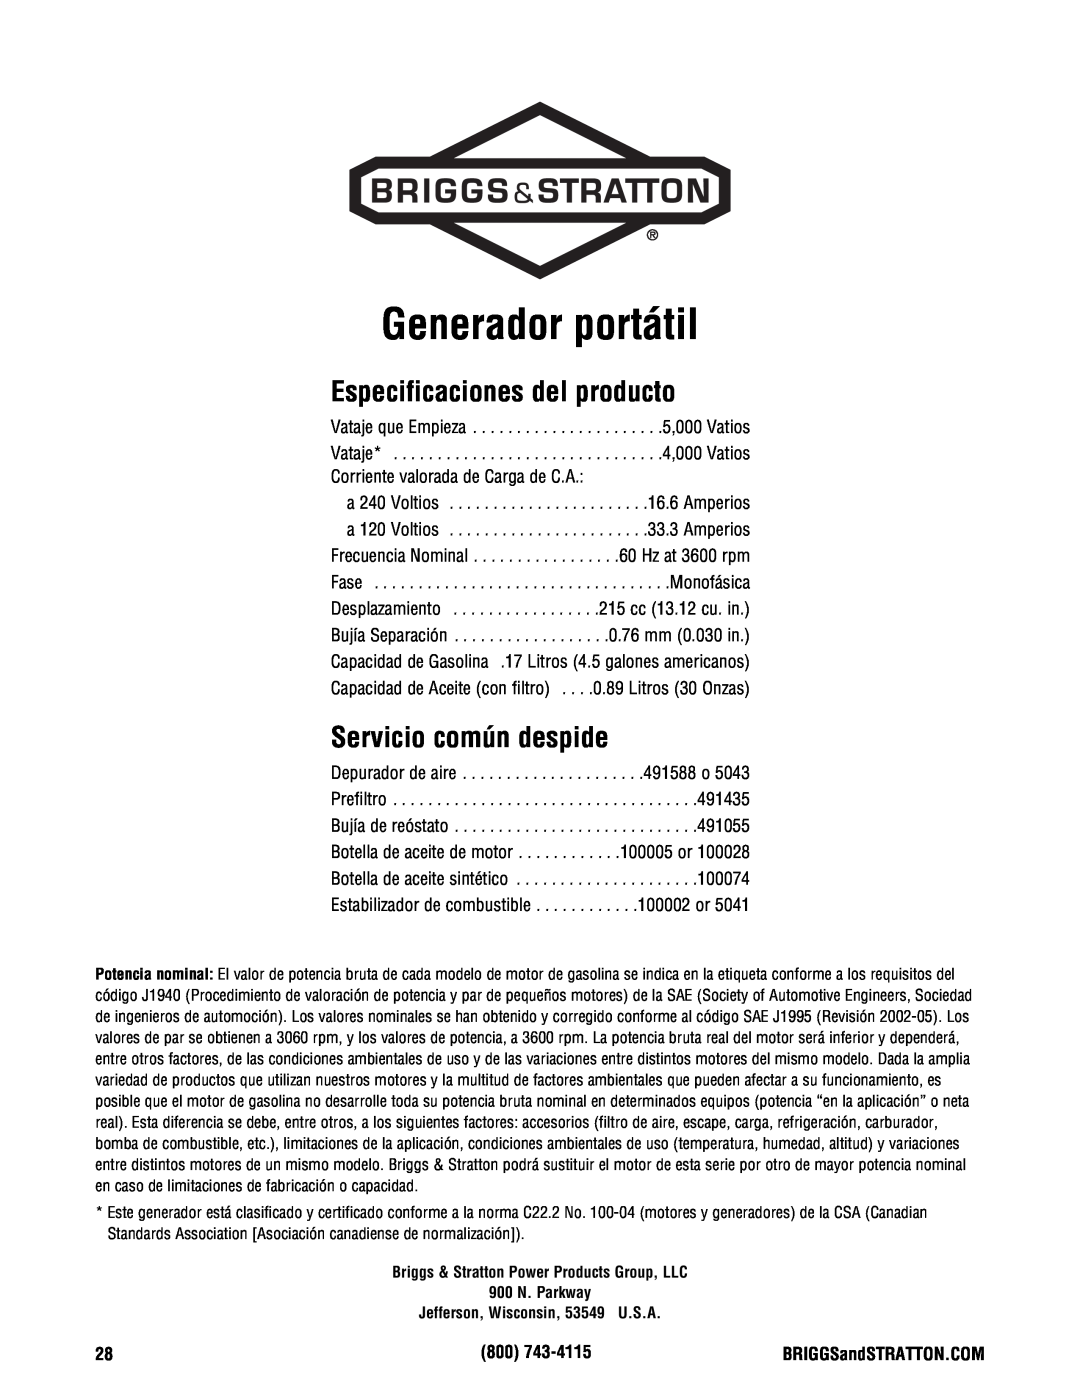 Briggs & Stratton PRO4000 manual Generador portátil, Especificaciones del producto, Servicio común despide 